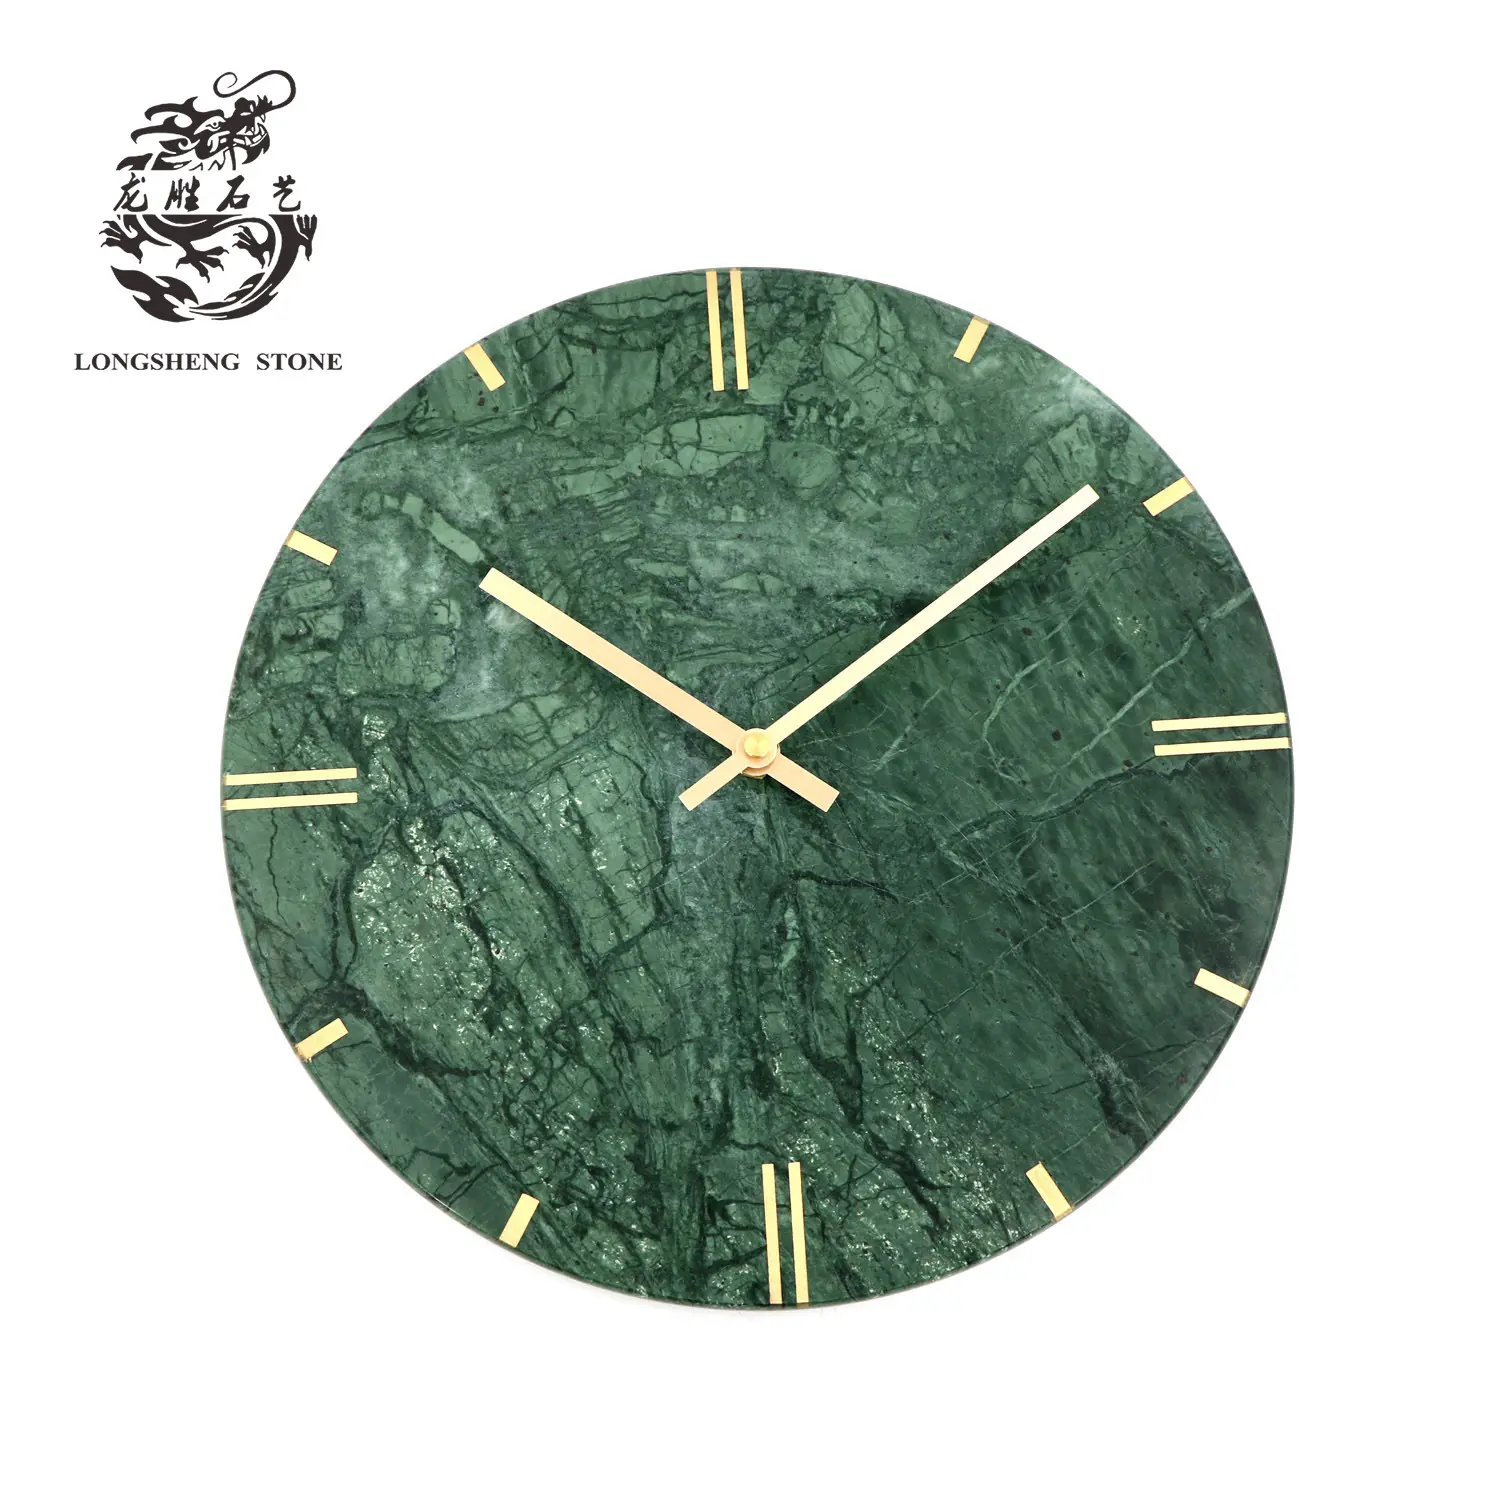 공장 콘센트 거실을위한 새로운 장식 천연 녹색 대리석 둥근 벽 시계